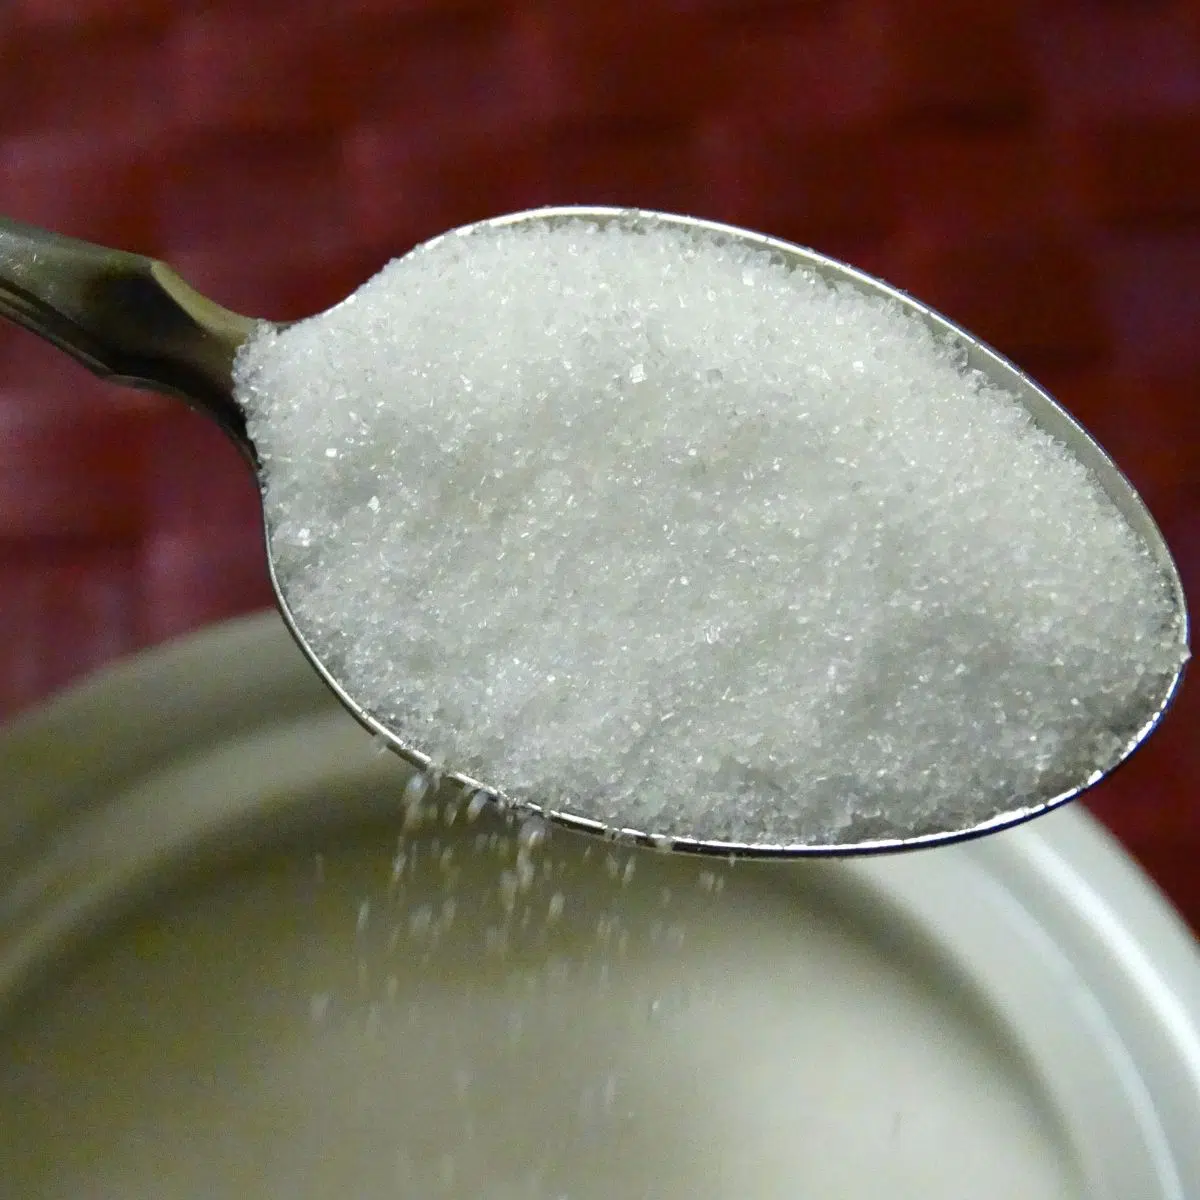 Zucker wird aus dem Behälter gelöffelt.